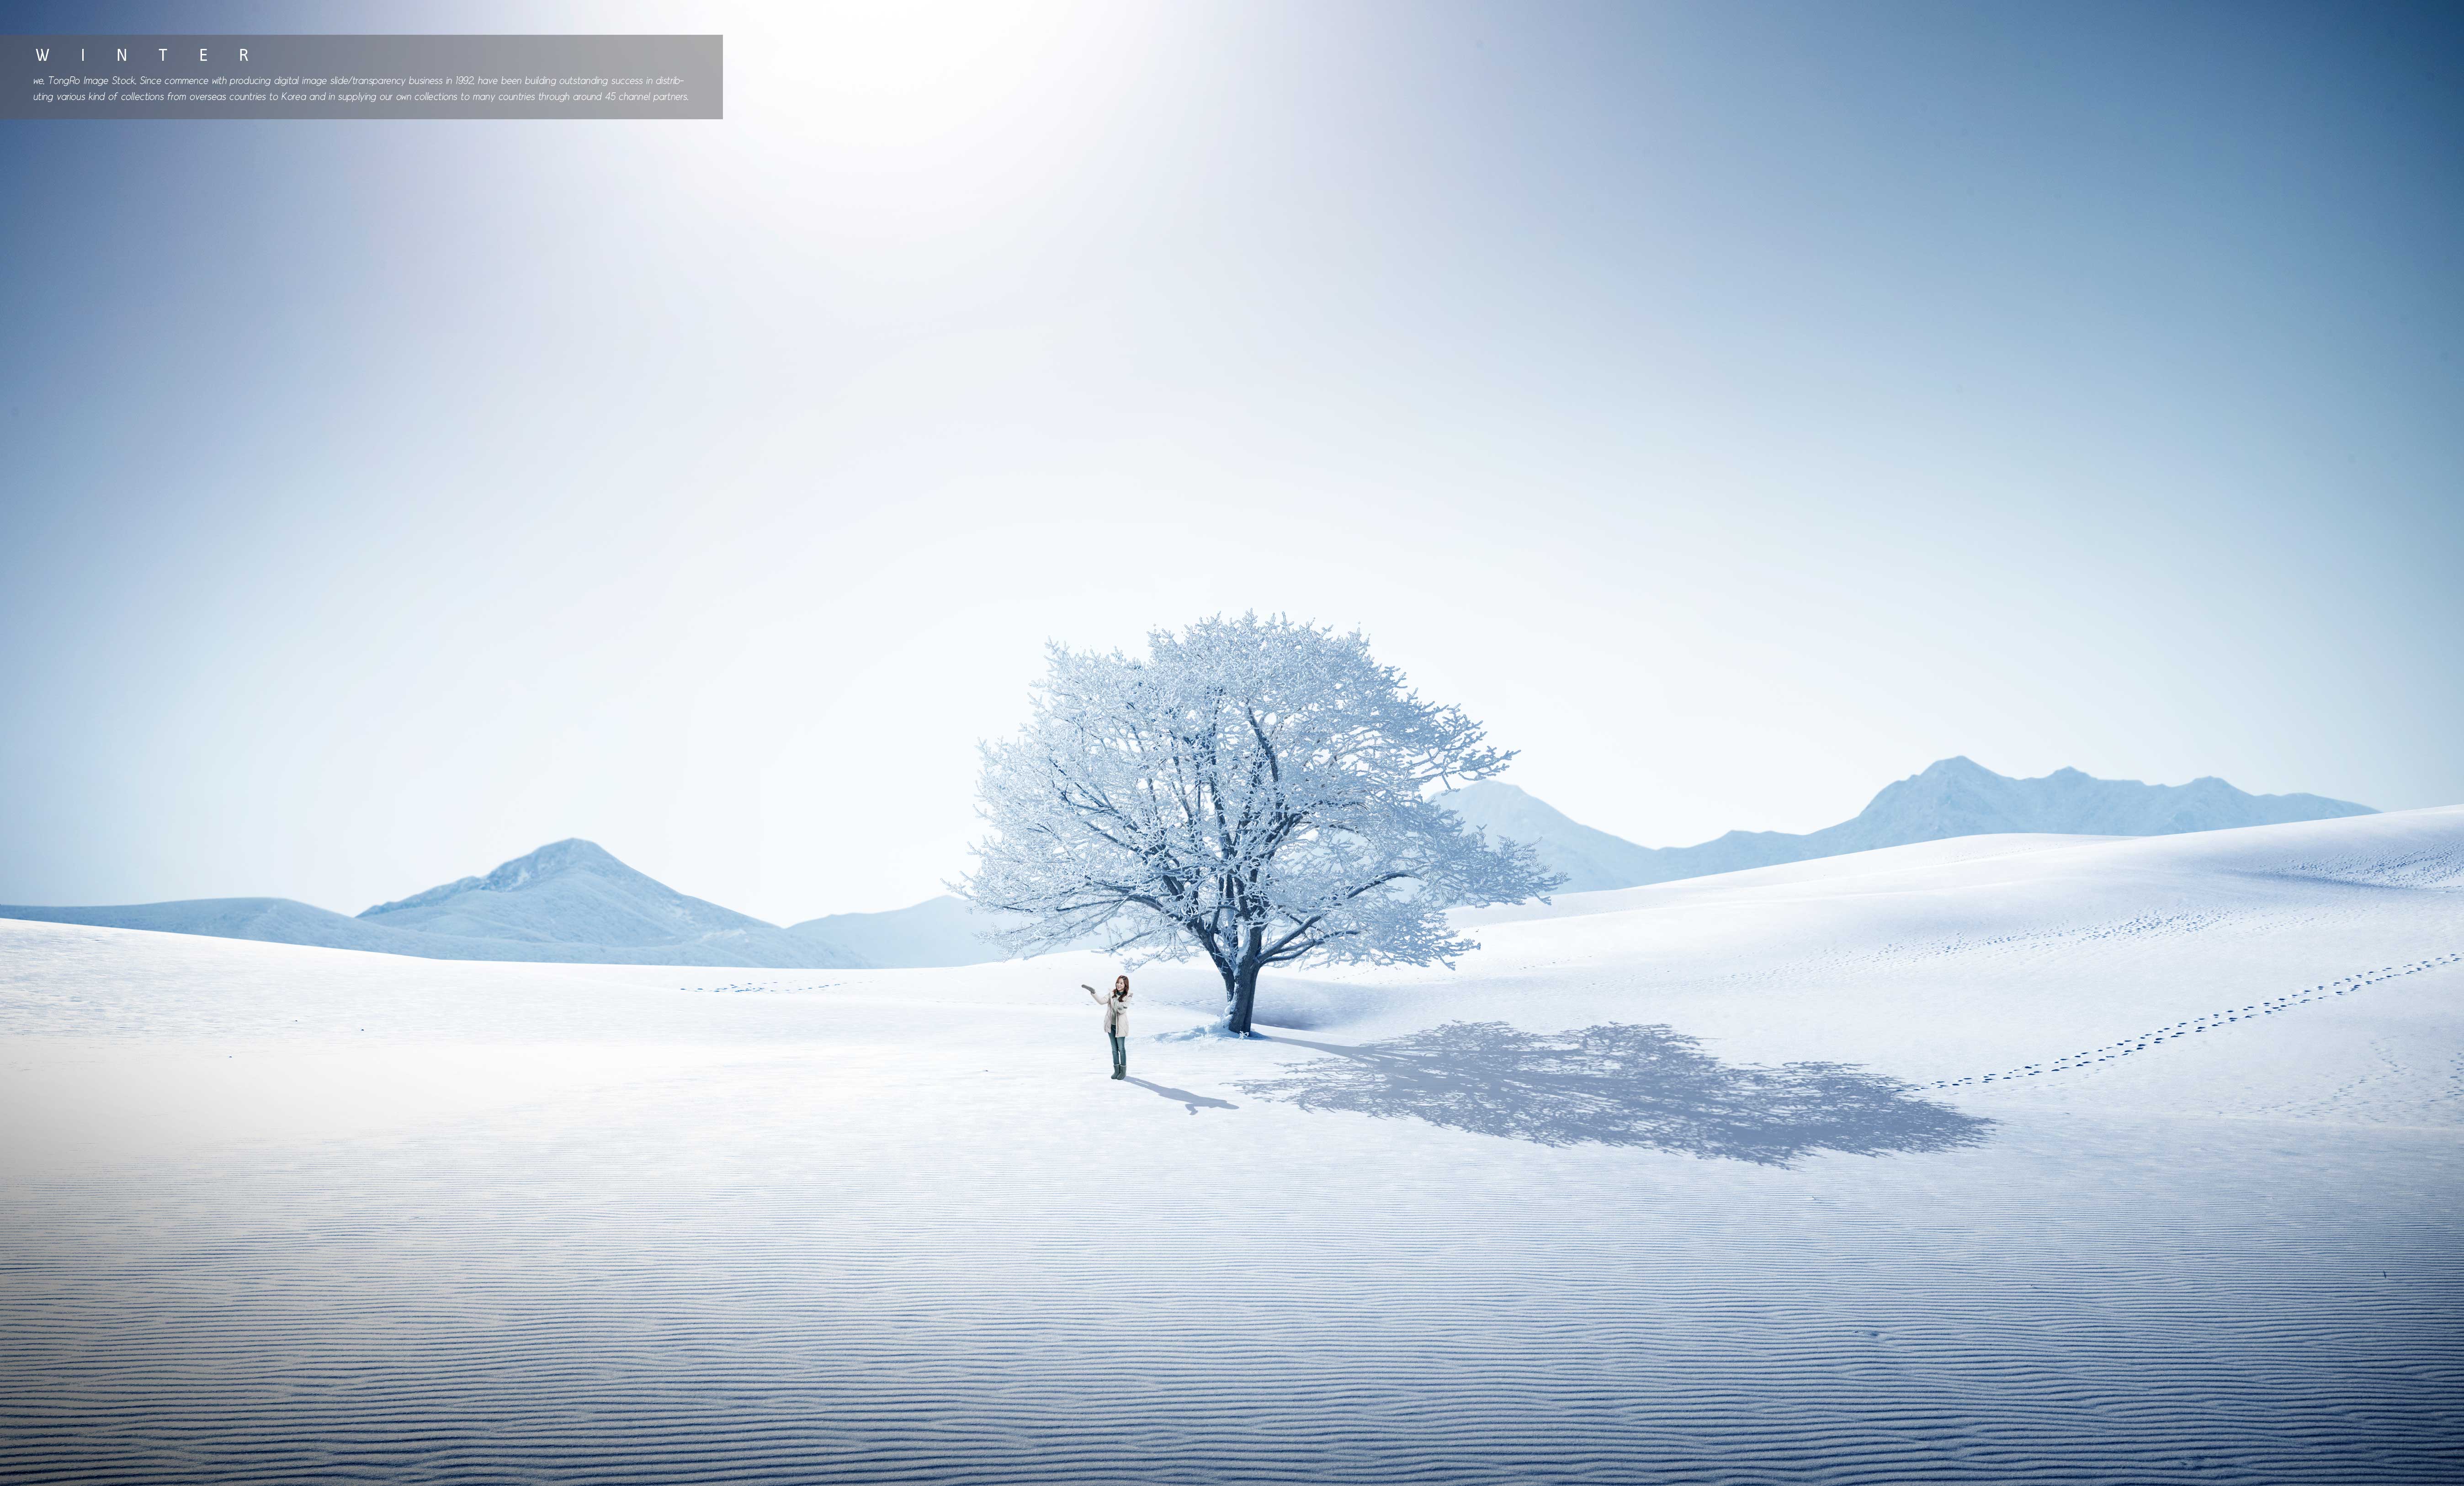 冬季旅行雪山白树推广主题背景图psd素材设计素材模板